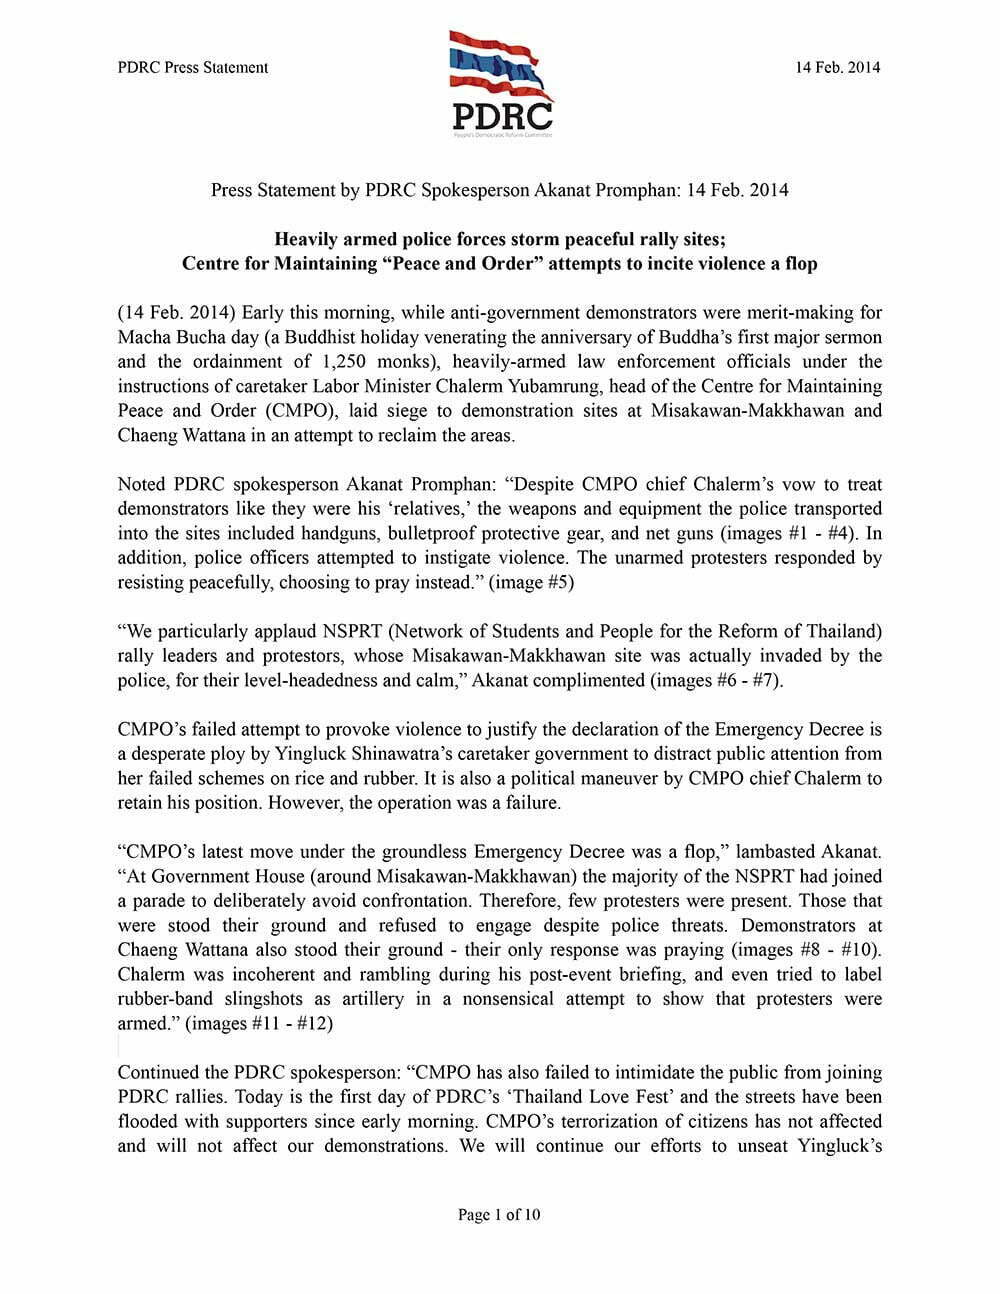 pdrc-press-statement akanat 14-feb--2014 final-1